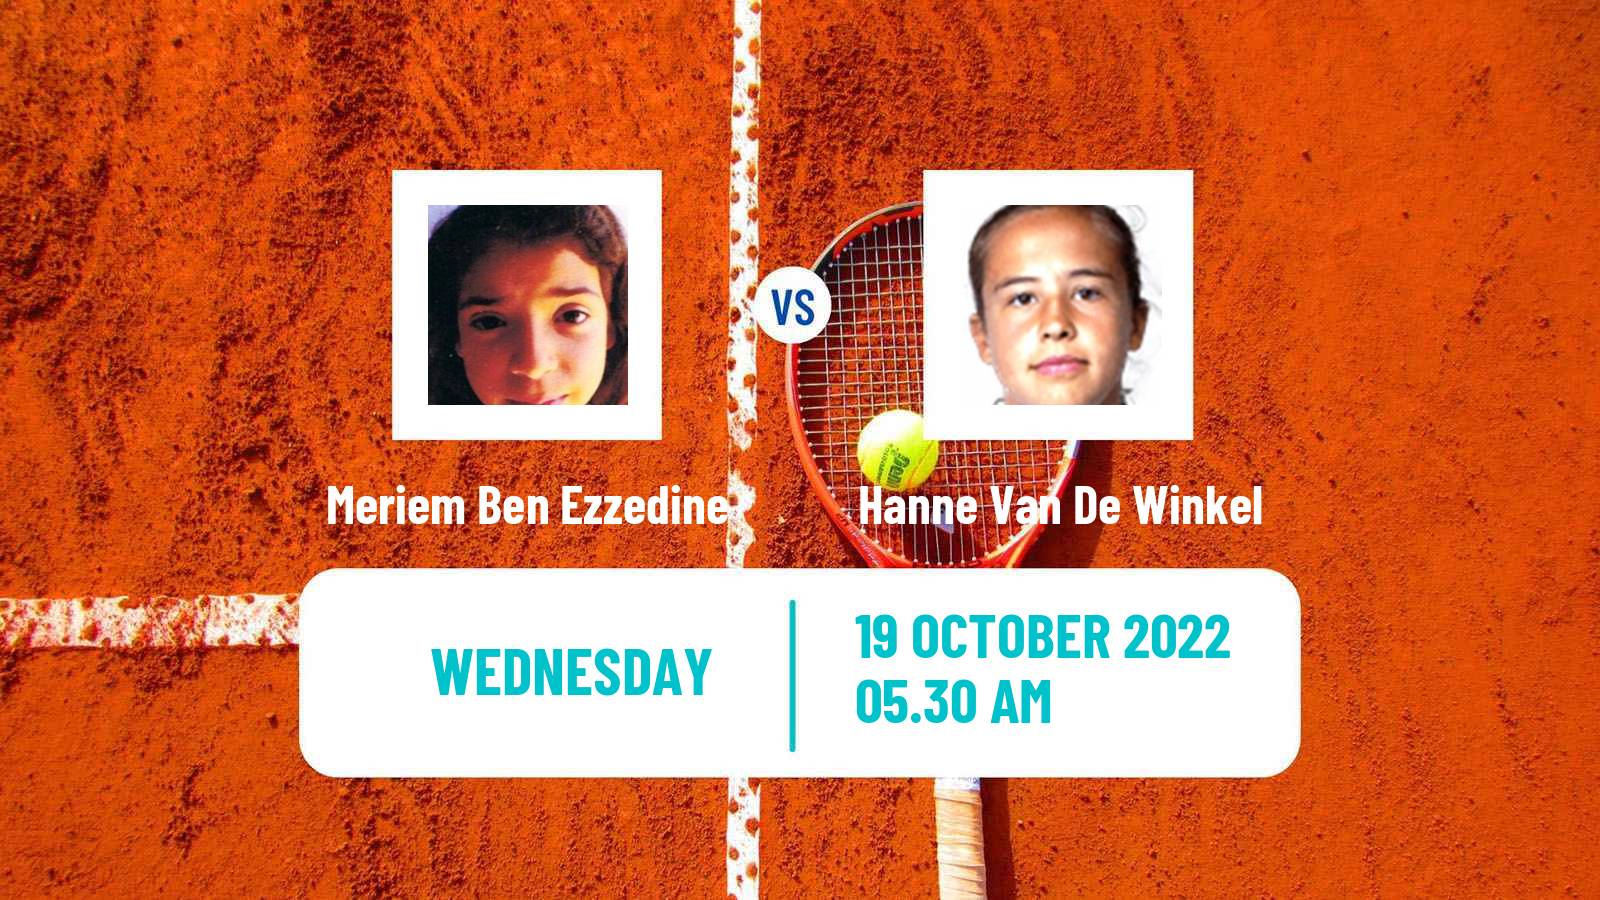 Tennis ITF Tournaments Meriem Ben Ezzedine - Hanne Van De Winkel